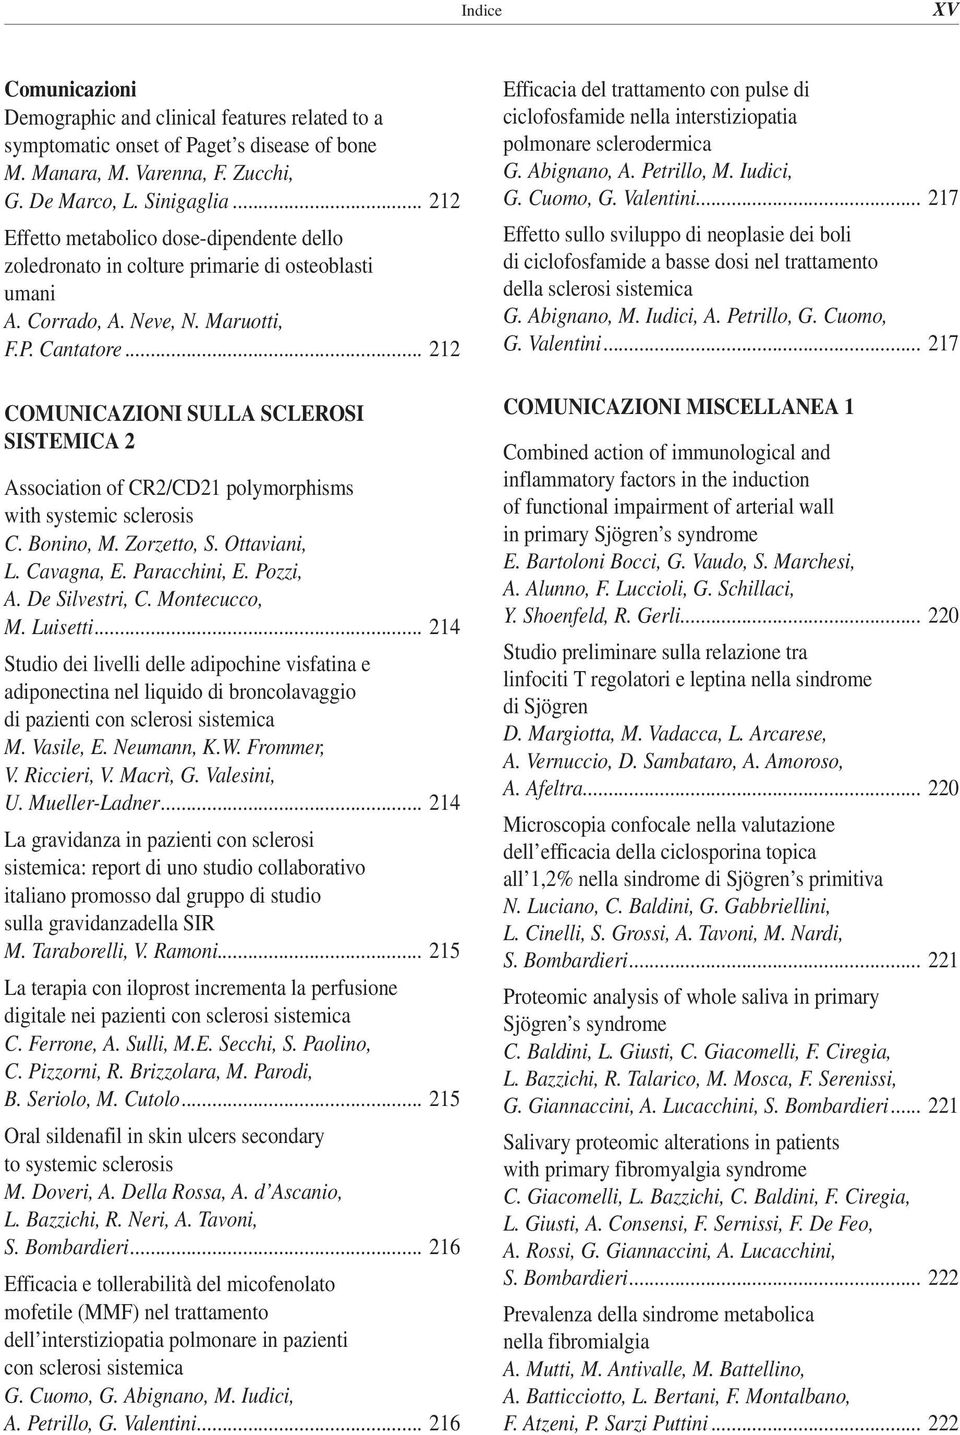 .. 212 COMUNICAZIONI SULLA SCLEROSI SISTEMICA 2 Association of CR2/CD21 polymorphisms with systemic sclerosis C. Bonino, M. Zorzetto, S. Ottaviani, L. Cavagna, E. Paracchini, E. Pozzi, A.